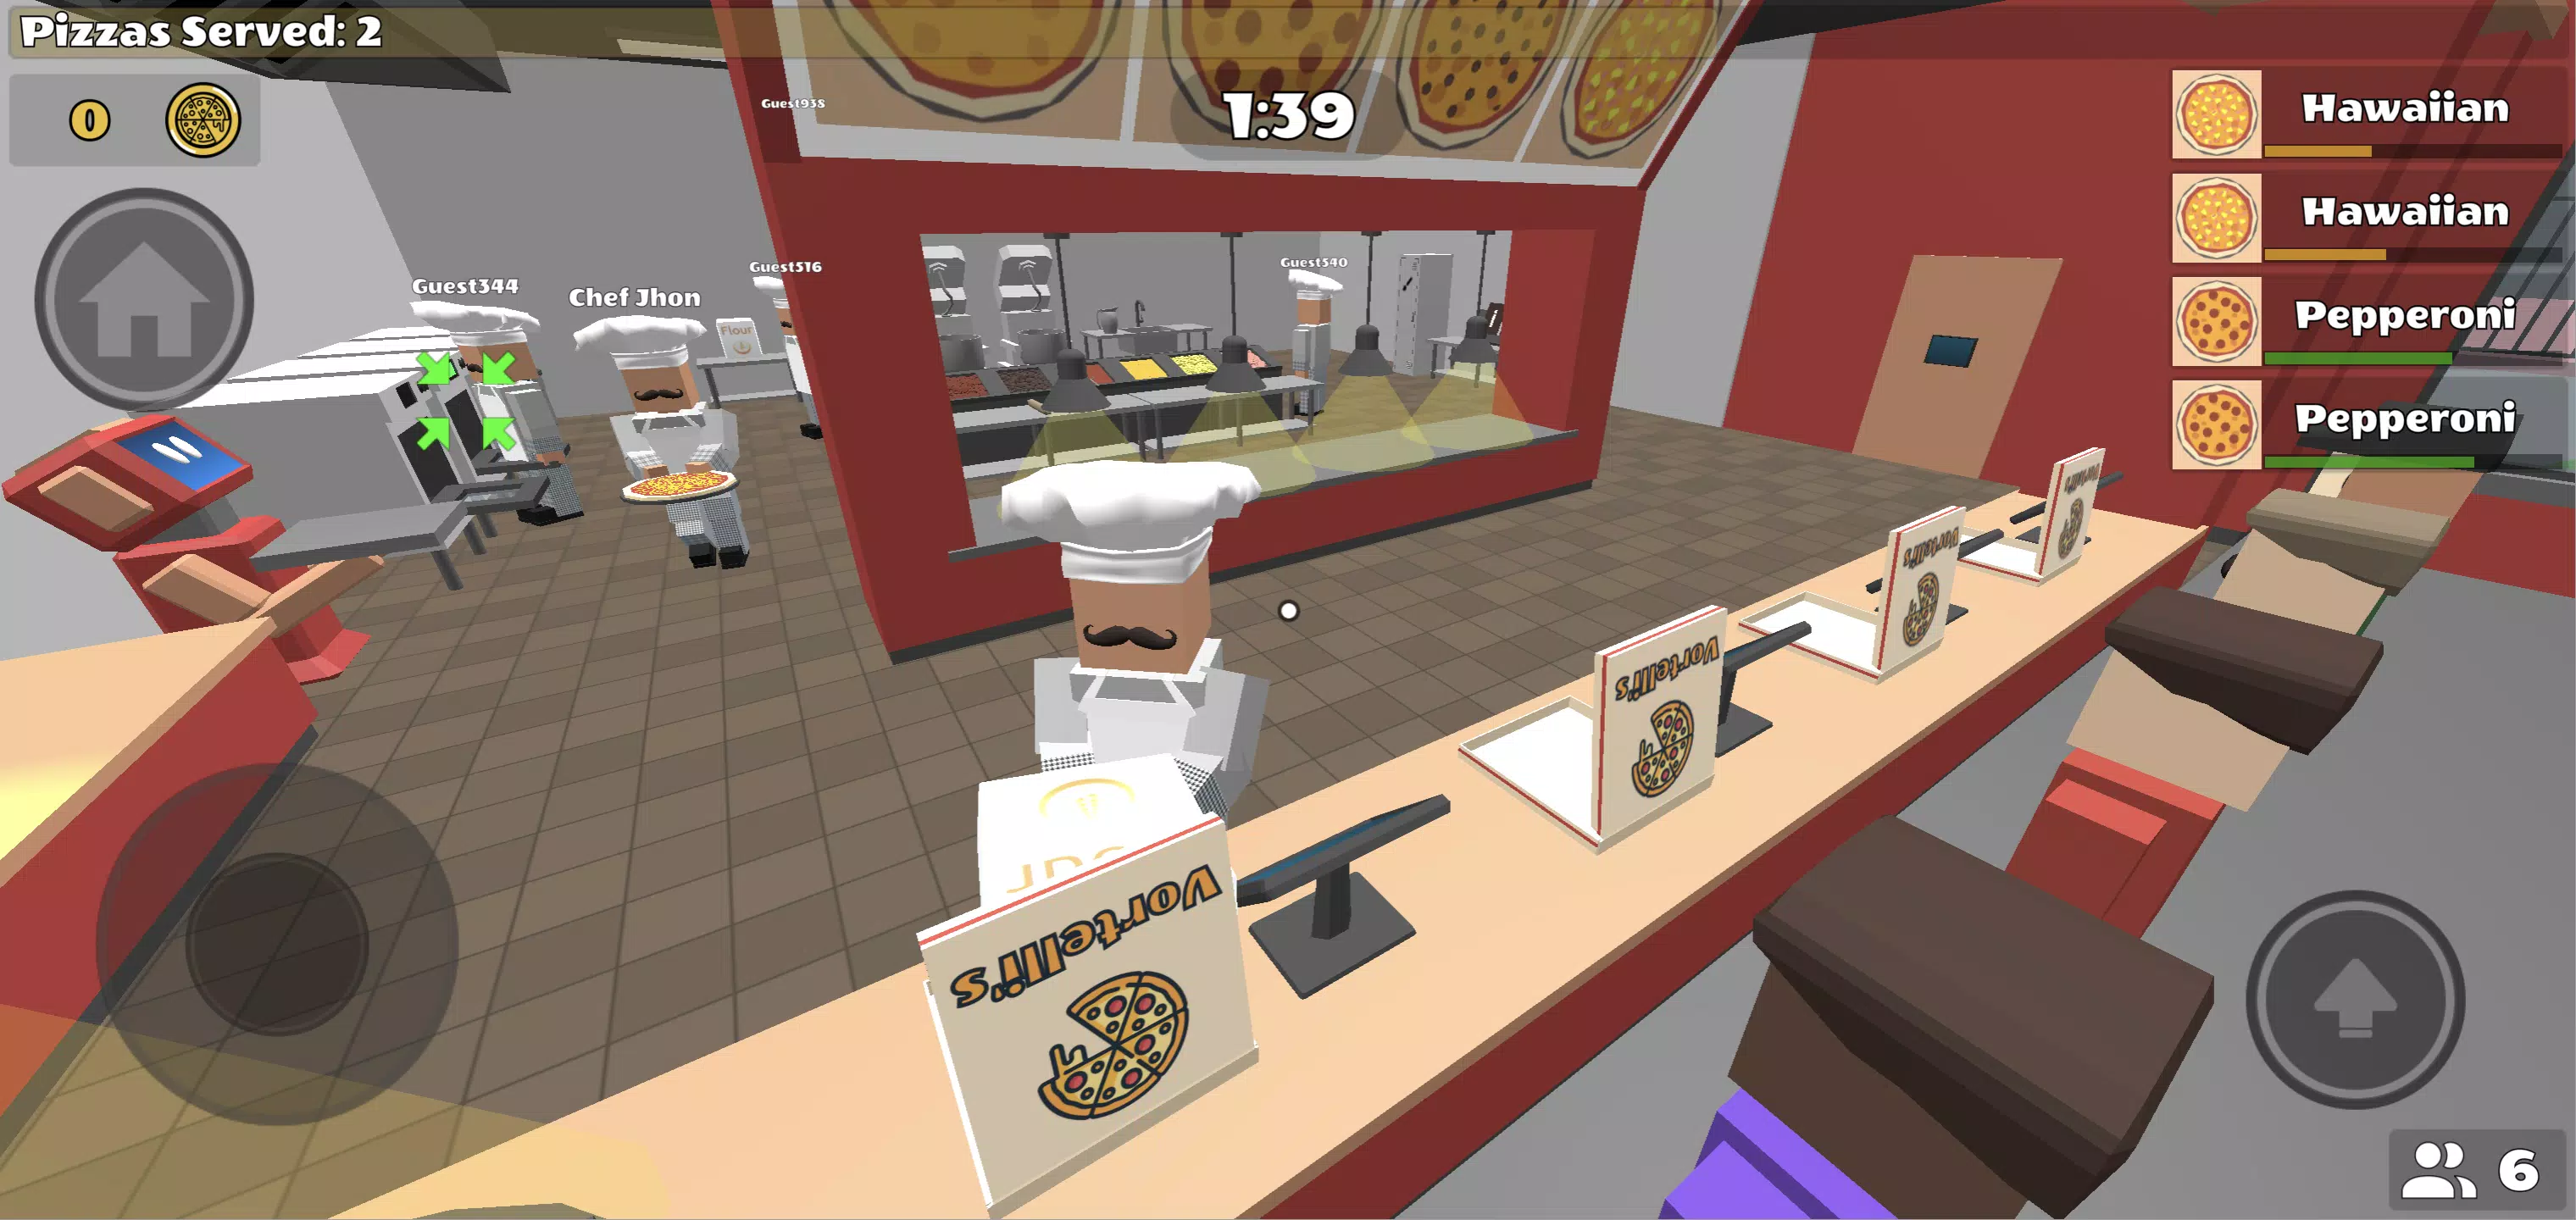 Vortelli's Pizza - A 3D Multiplayer Kitchen Sim - Showcase